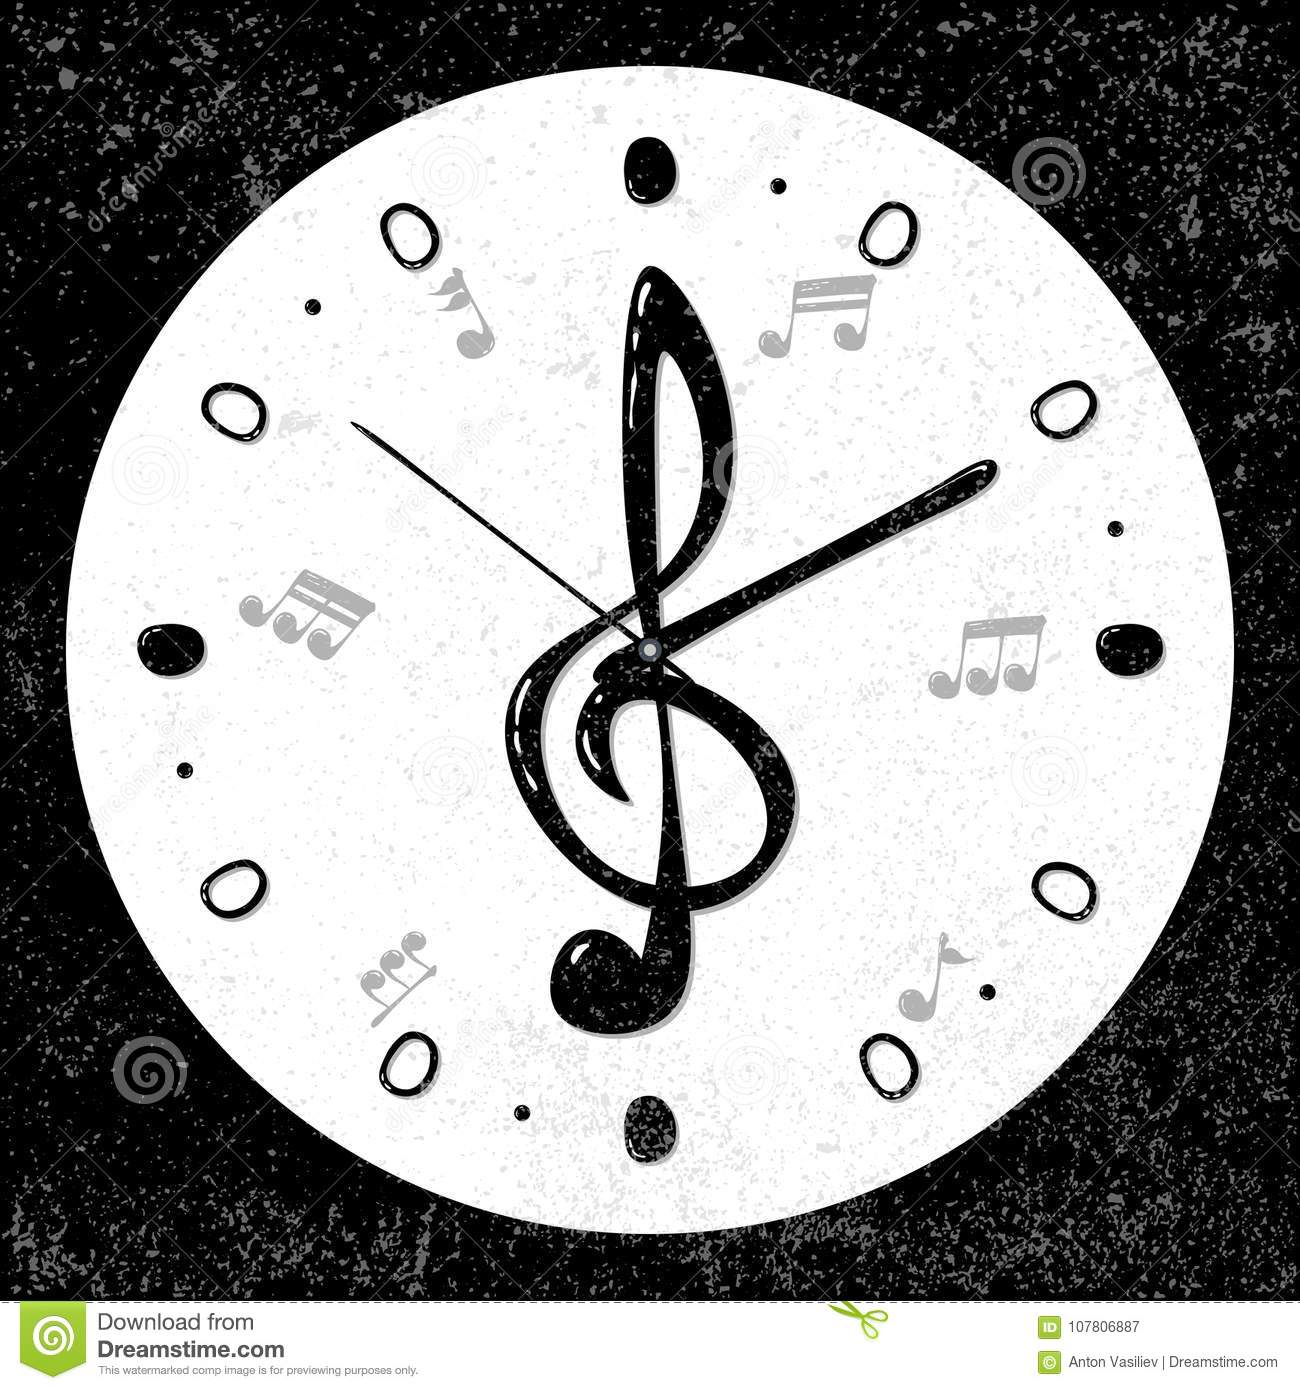 la-retro-musicale-clef-triple-note-le-concept-d-horloge-vecteur-107806887.jpg